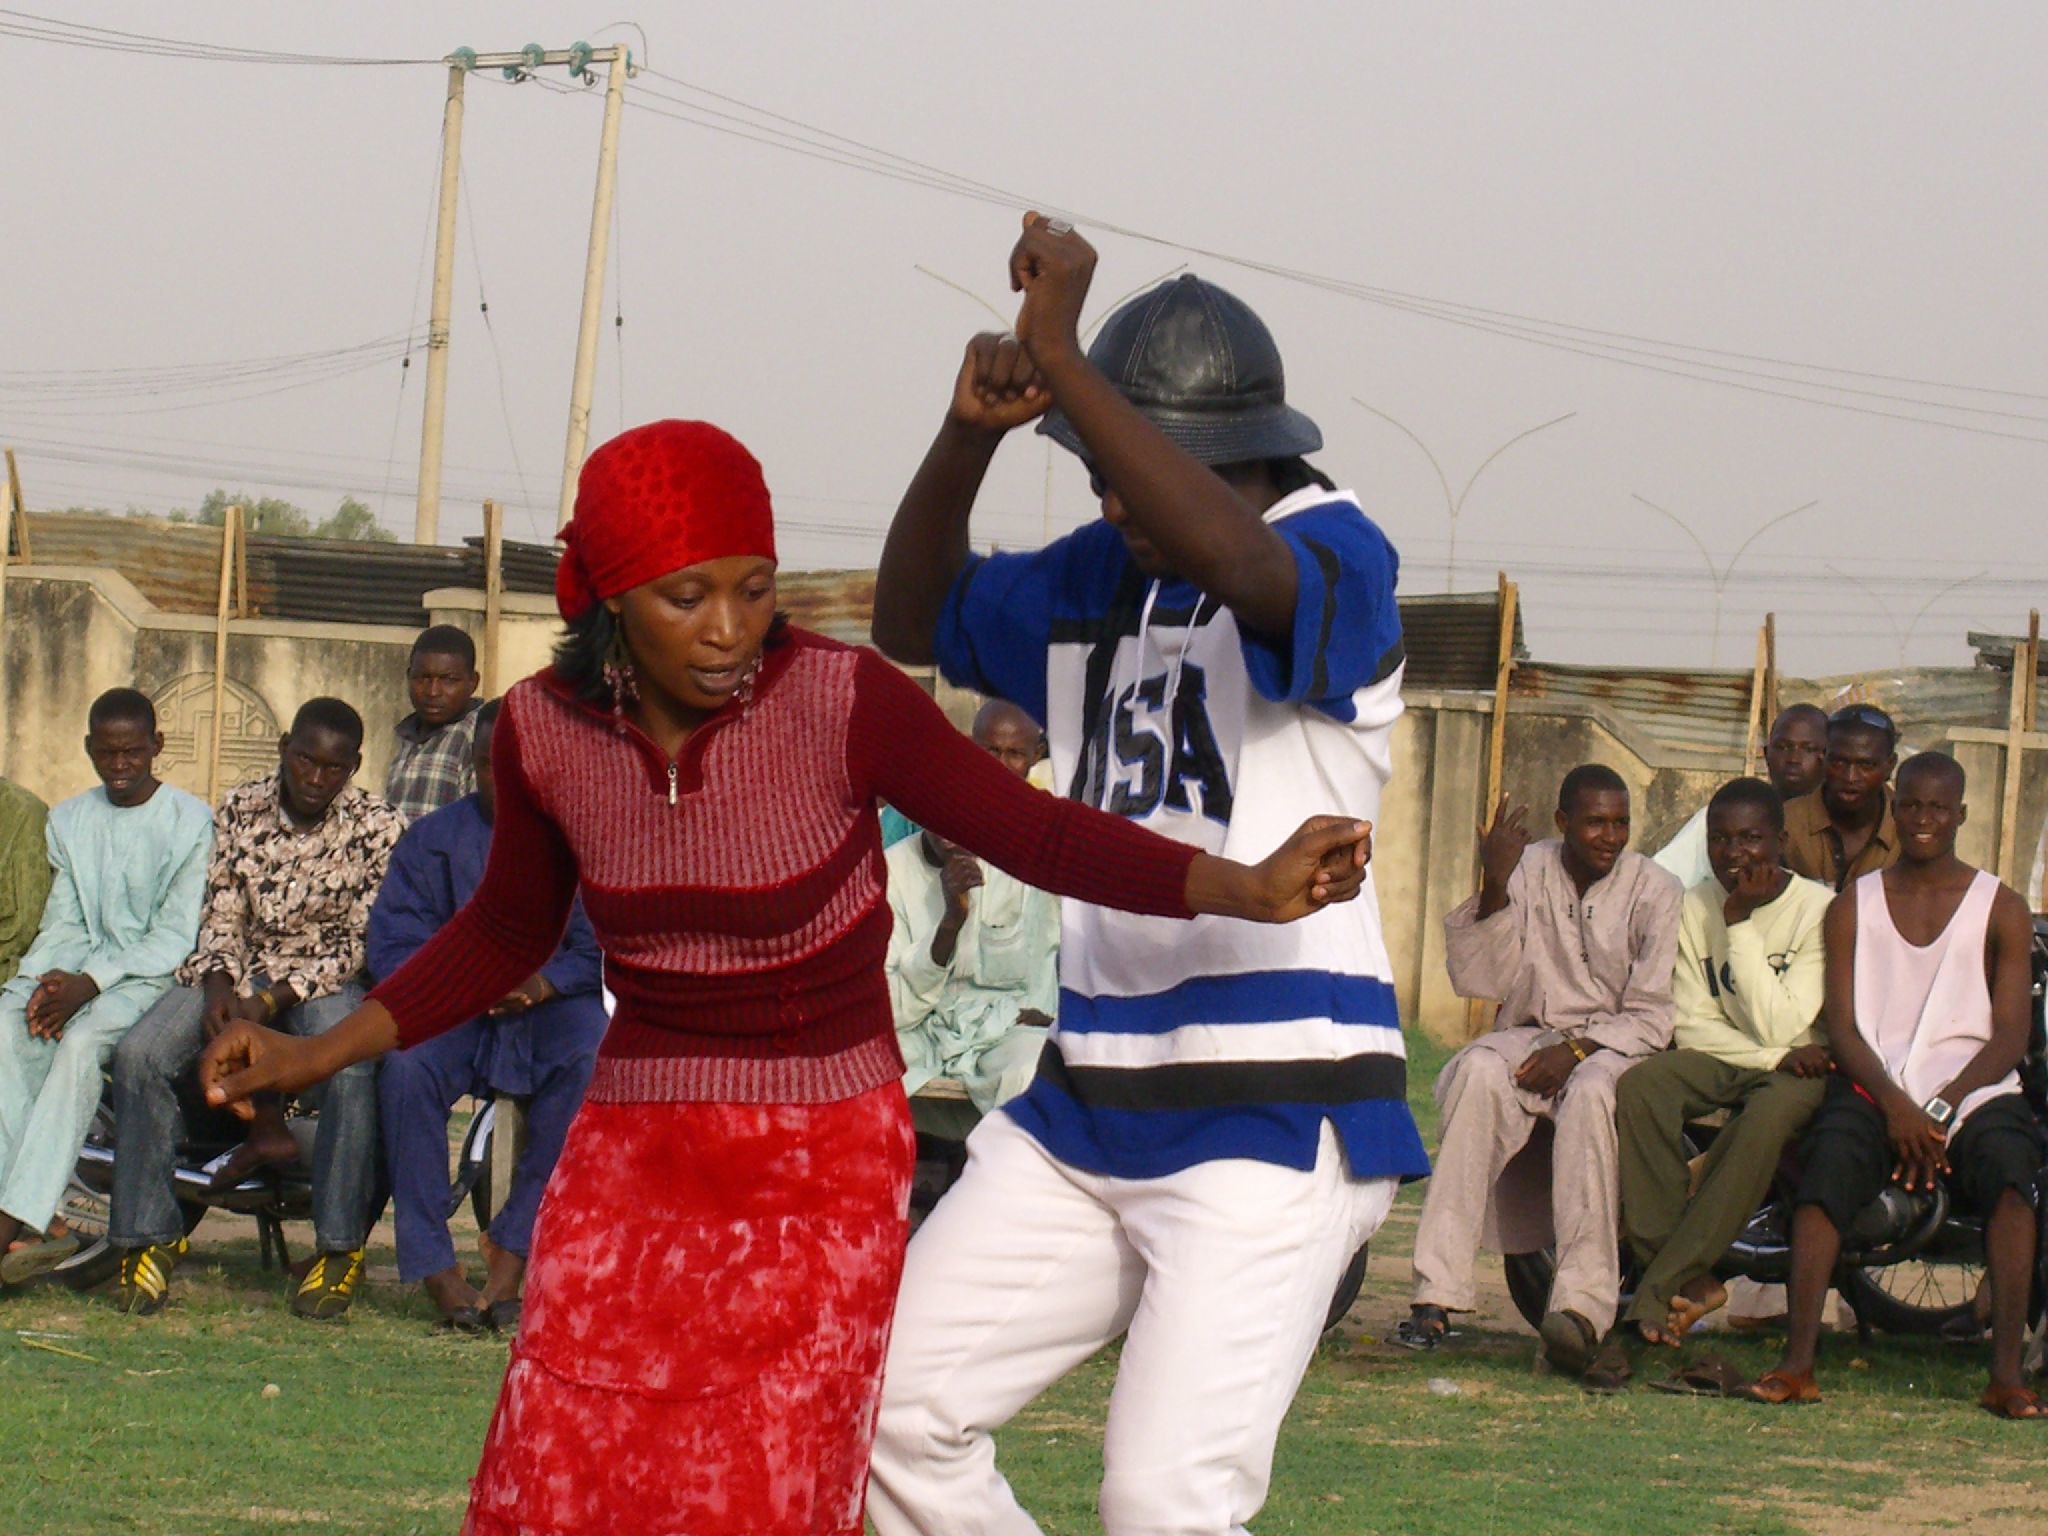 À Maradi, quelle influence culturelle du Nigeria voisin sur les jeunes de la région